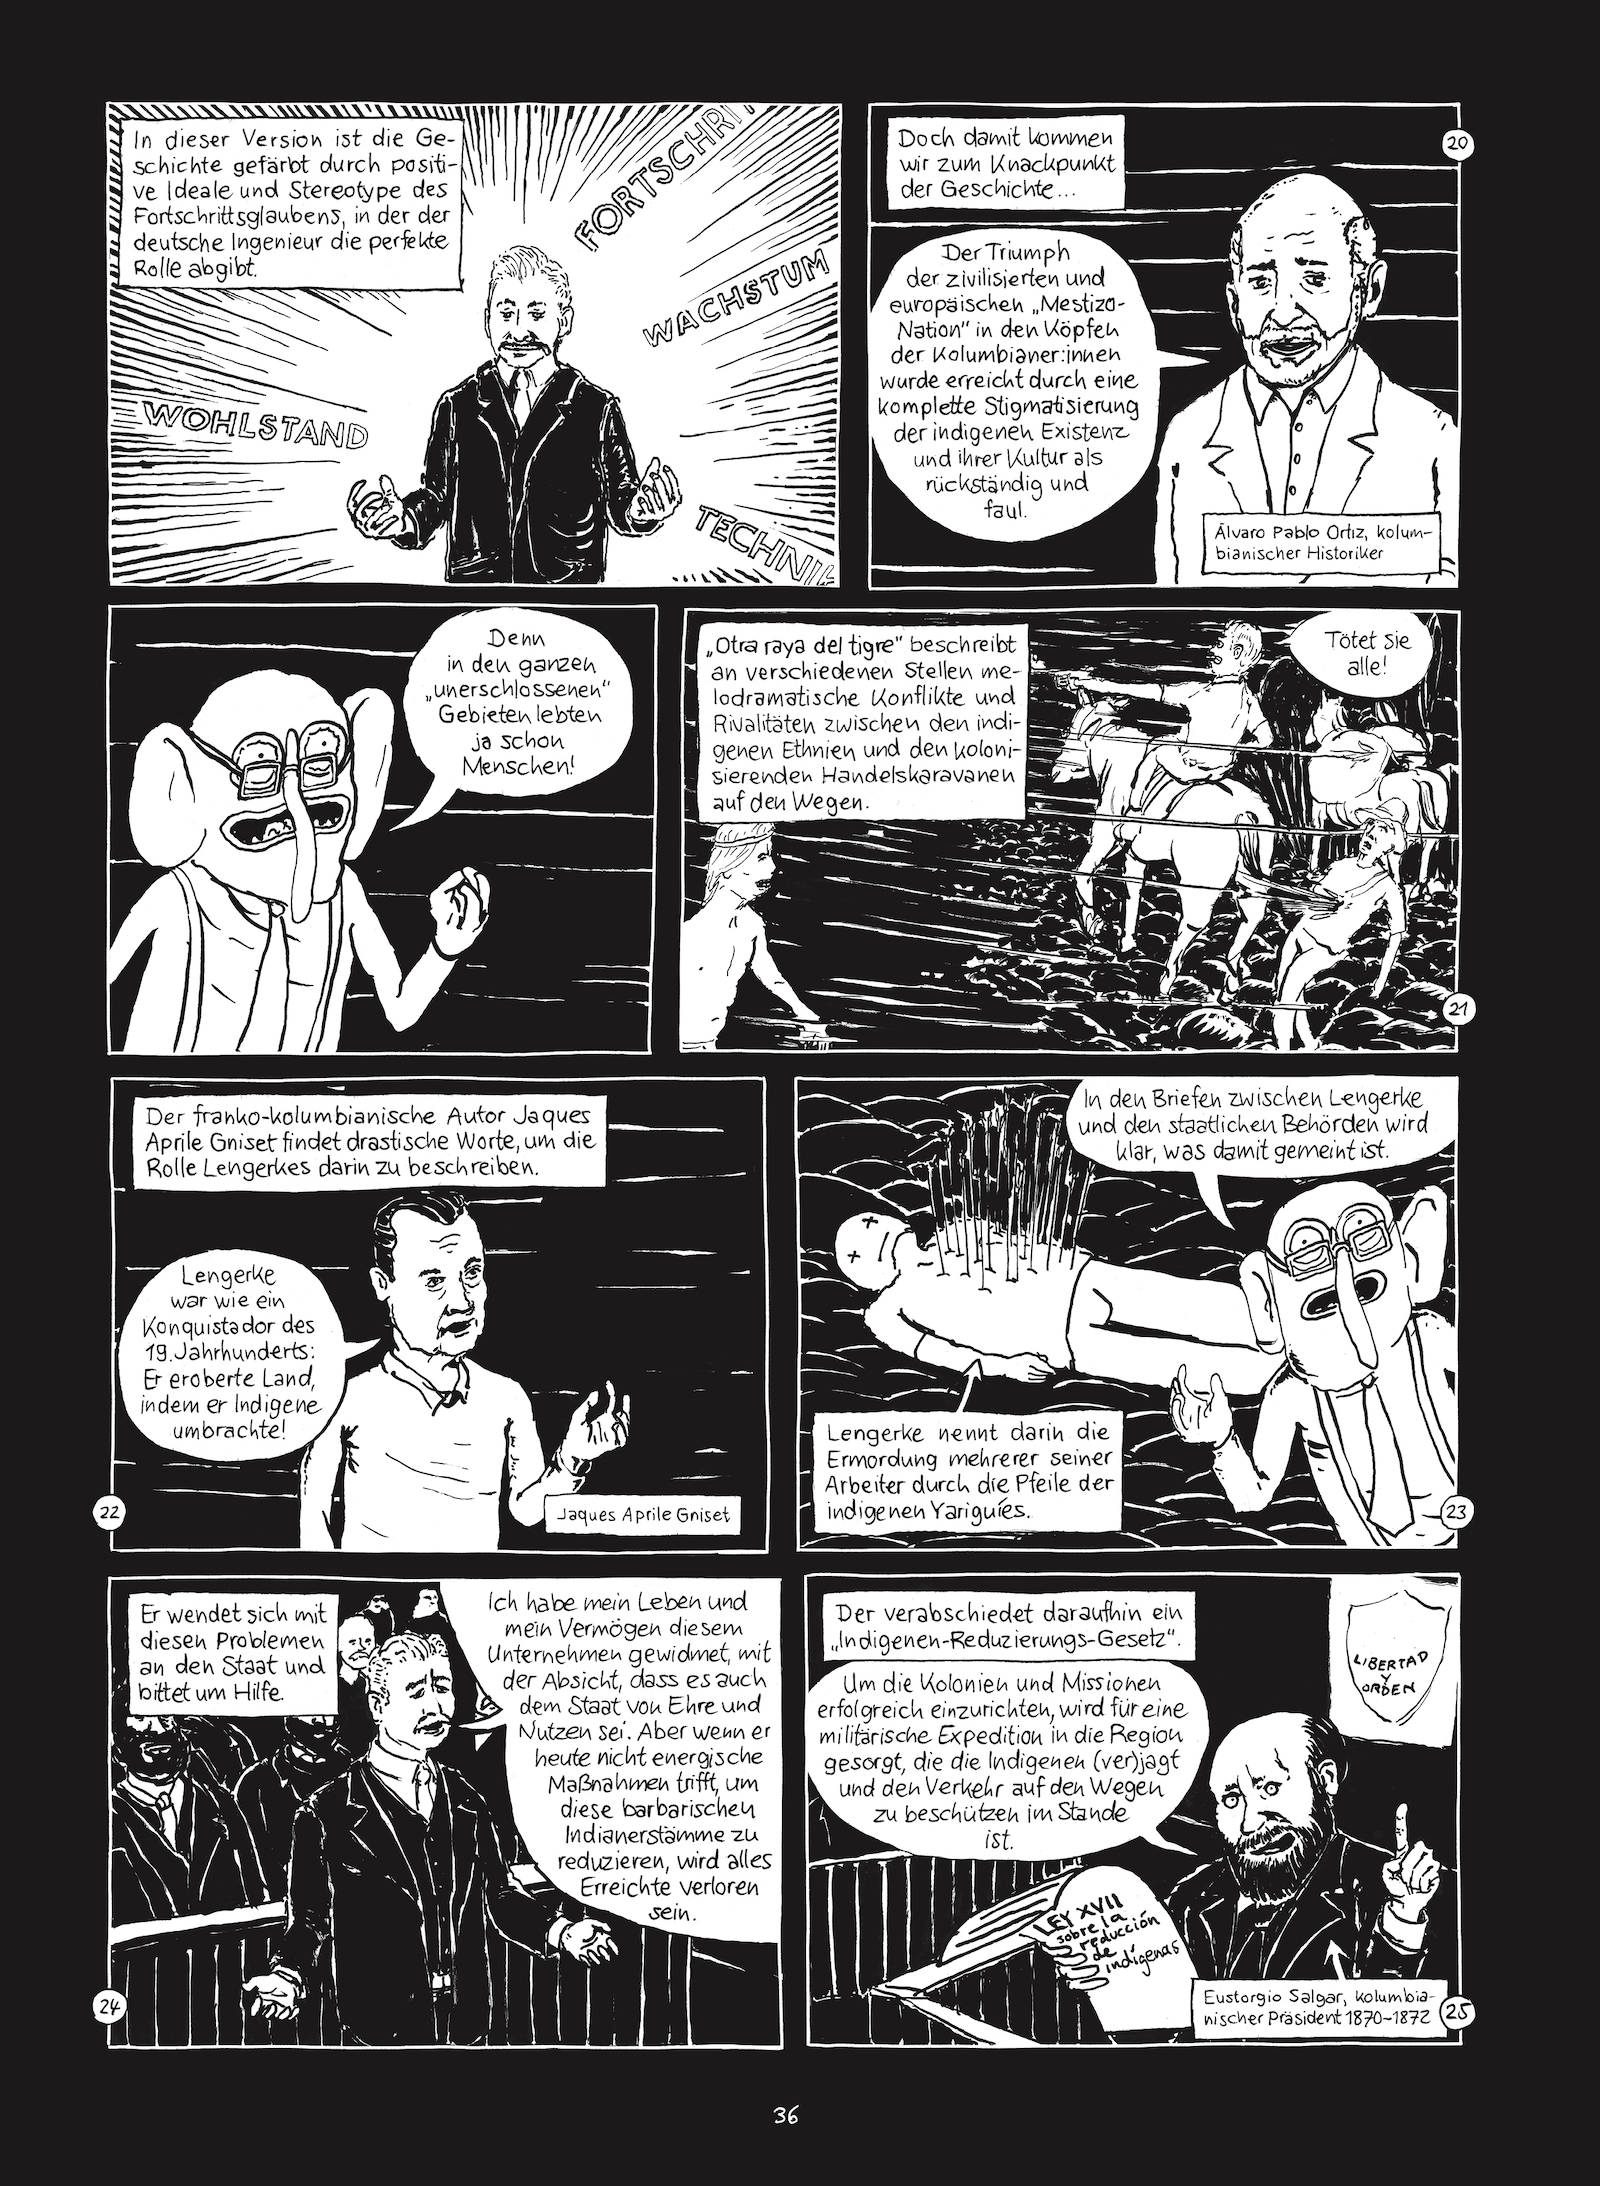 Seite 36 von Christian Diaz Orejarenas Comic "Otras Rayas"